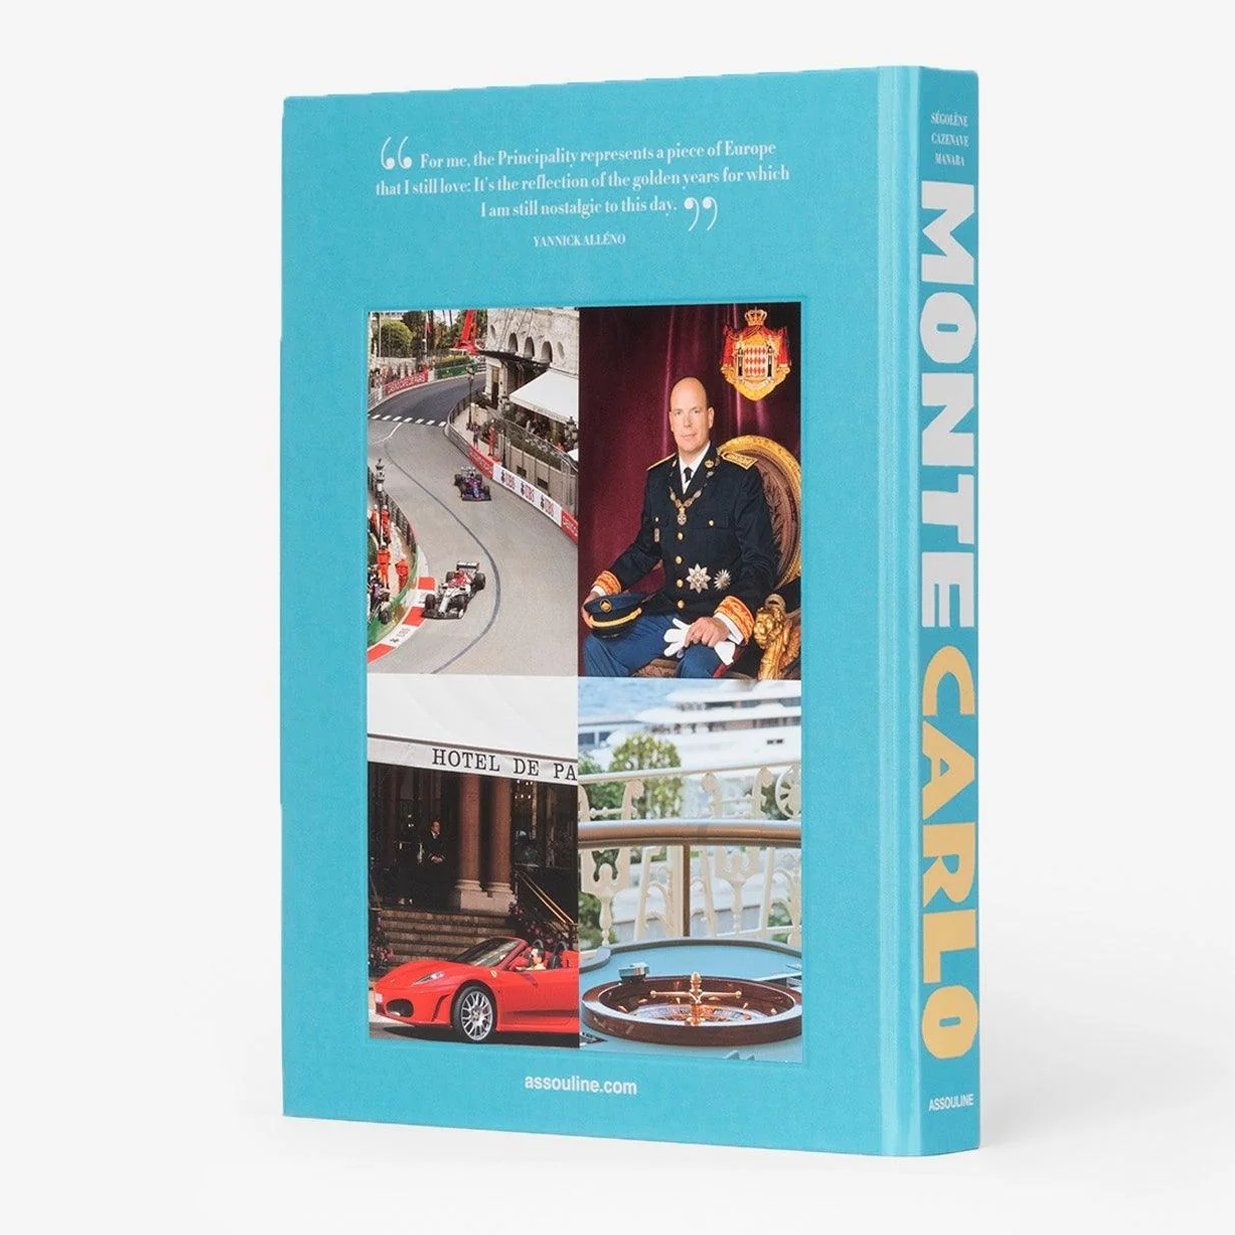 "Monte Carlo" Book